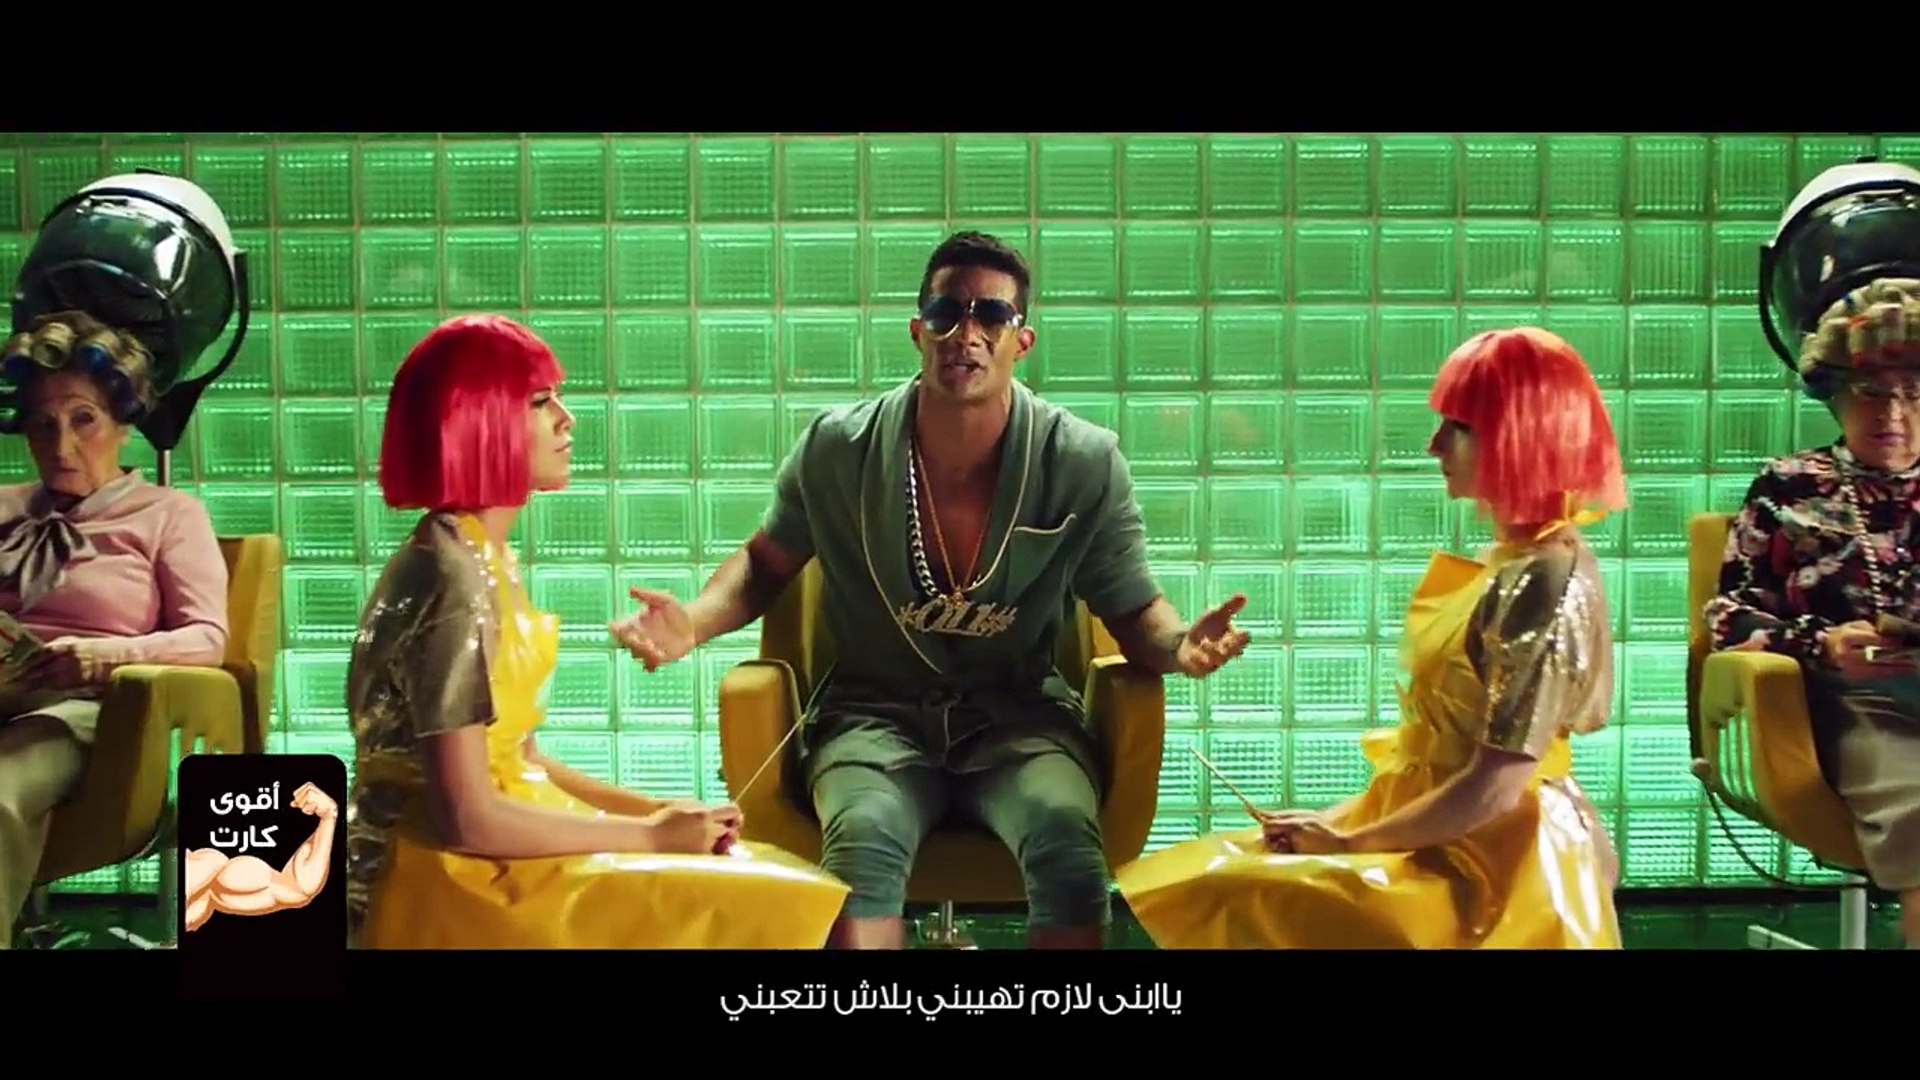 أغنية "أقوى كارت في مصر" لمحمد رمضان - كاملة - video Dailymotion